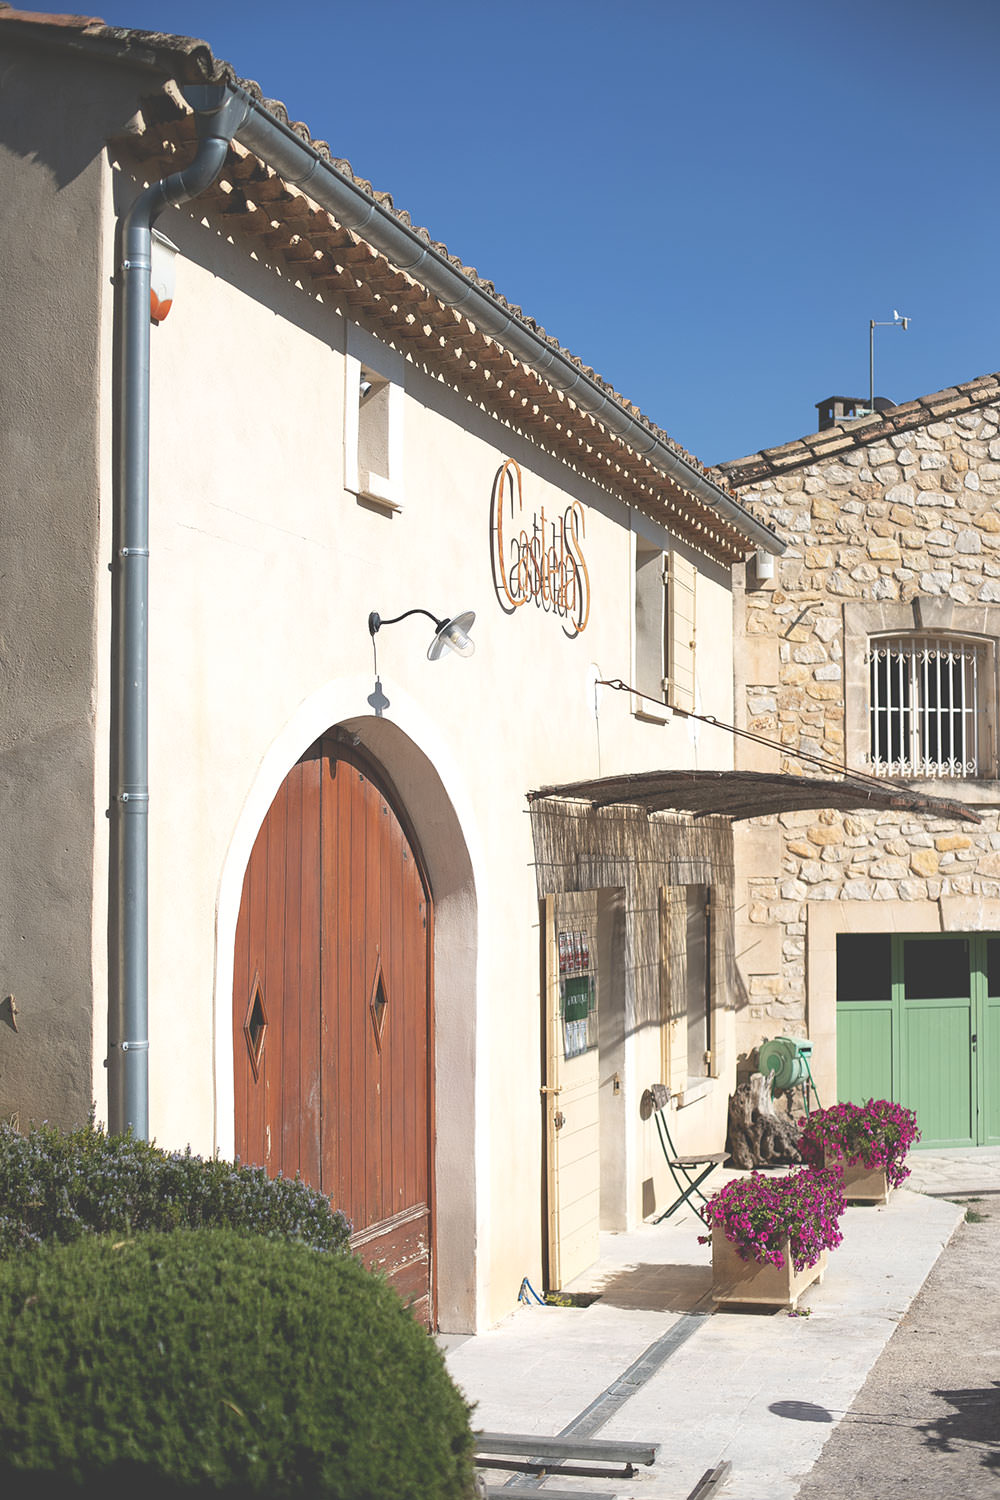 Kulinarischer Reisebericht durch Provence und Camargue mit dem französischen Landwirtschaftsministerium | moeyskitchen.com #provence #camargue #frankreich #reise #travel